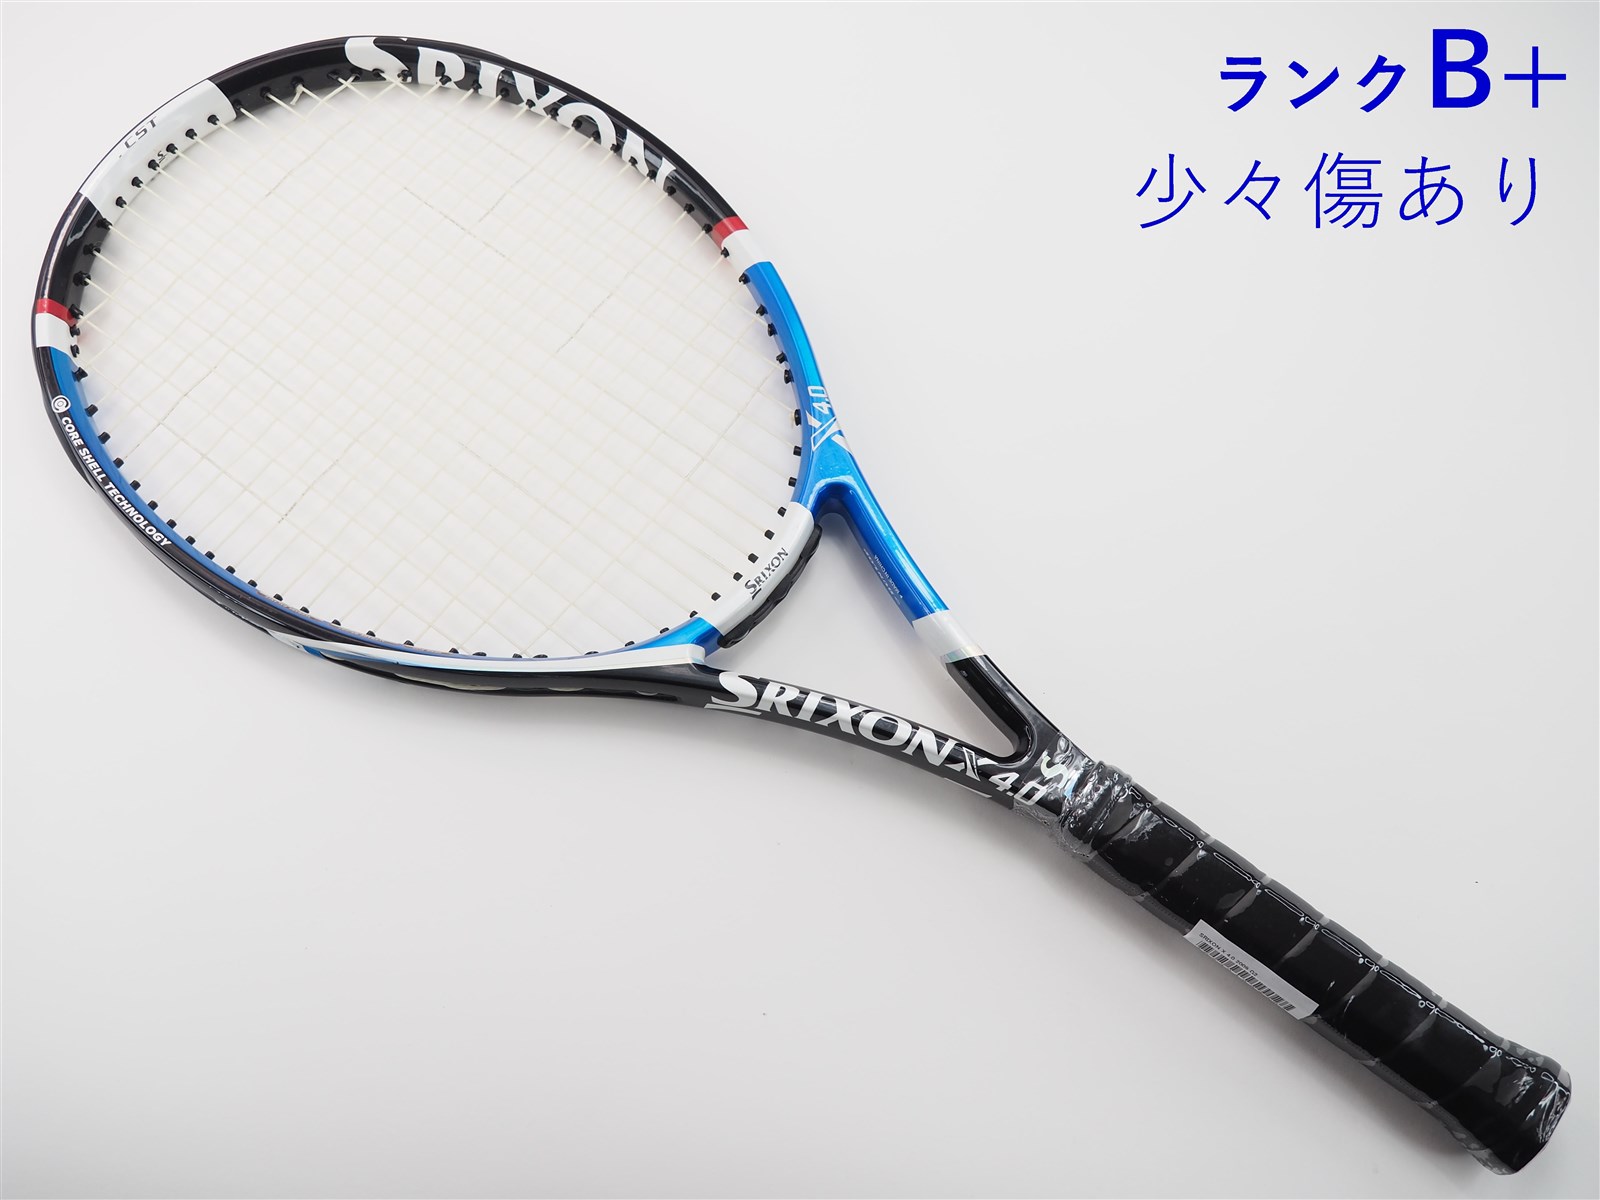 98平方インチ長さテニスラケット スリクソン レヴォ エックス 2.0 2011年モデル (G3)SRIXON REVO X 2.0 2011